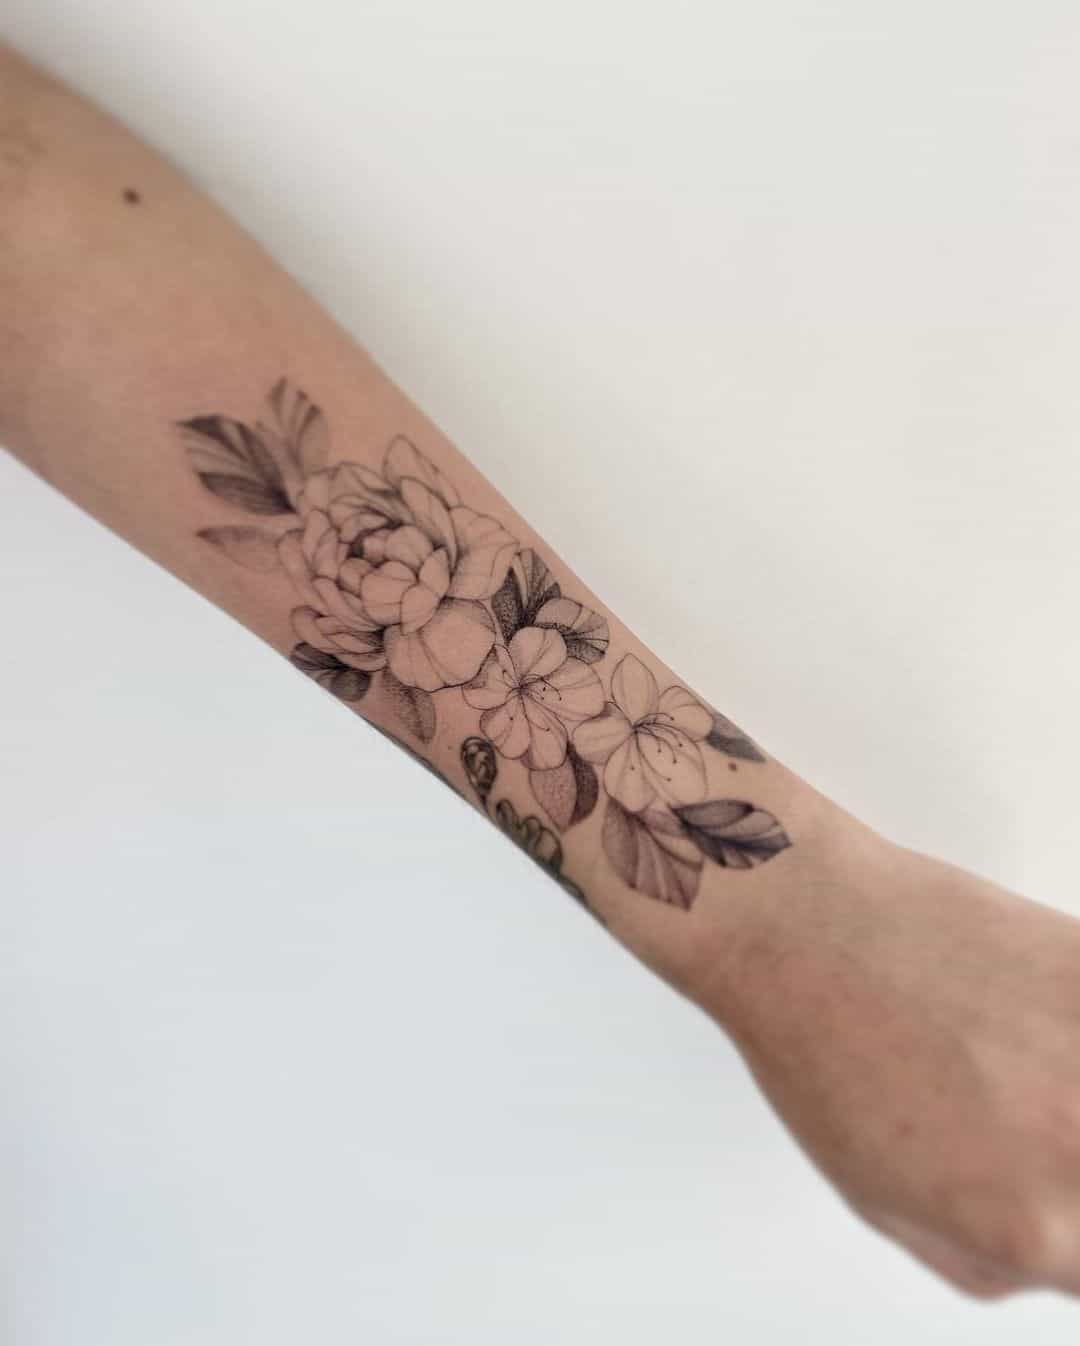 Amazing flower tattoo on forearm by jardin.de .sam